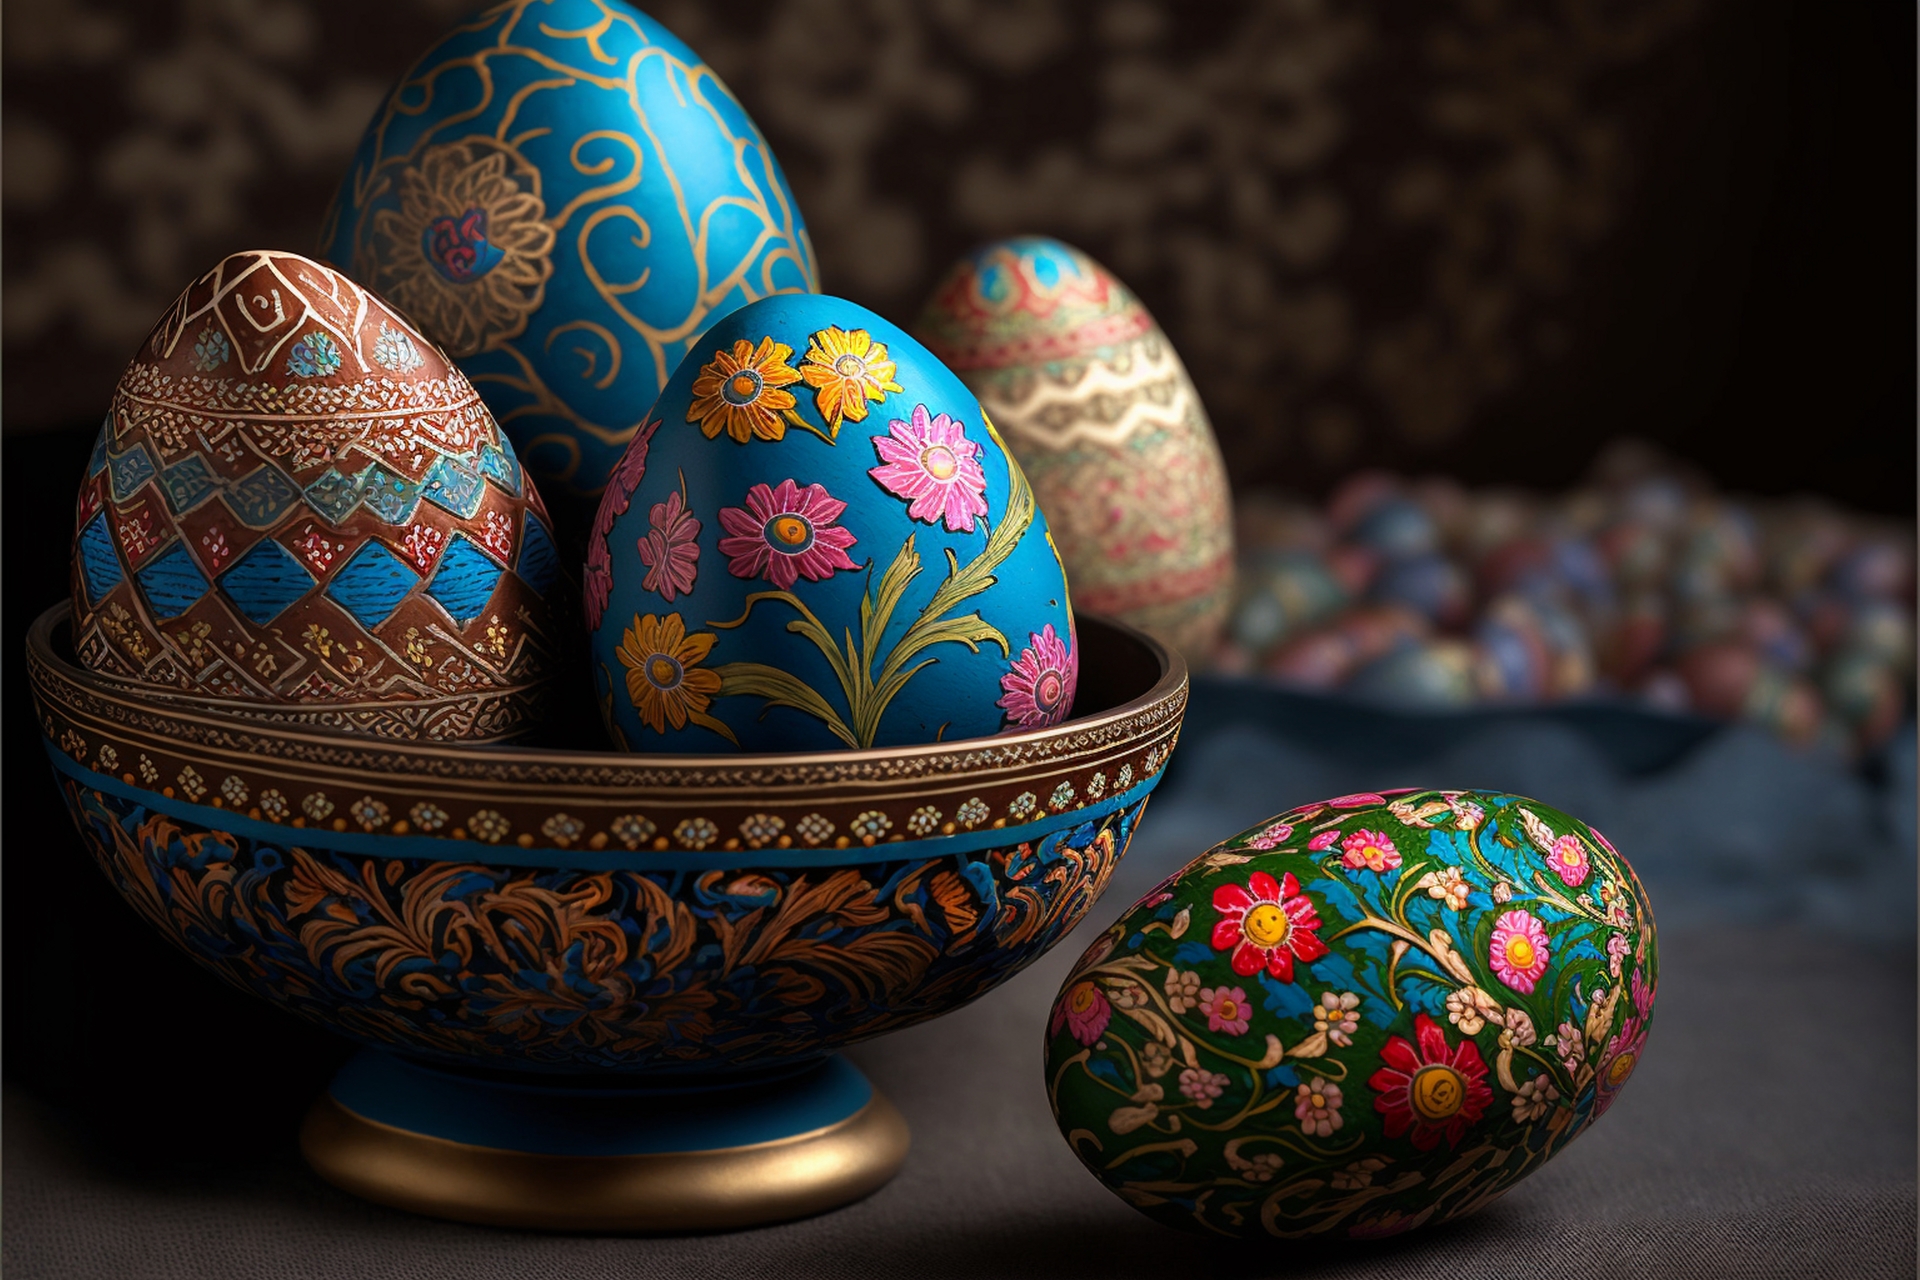 Ten barwny obrazek ukazuje tradycyjne ukraińskie pisanki, znane jako pysanky, umieszczone w urokliwej miseczce na stole. Pisanki są mistrzowsko wykonane i emanują bogactwem wzorów, kolorów i symboliki. Na białym stole widać delikatną porcelanową miseczkę, w której ułożone są pysanki. Miseczka ma subtelne zdobienia, które dodają jej elegancji i podkreślają ważność eksponowanych jajek